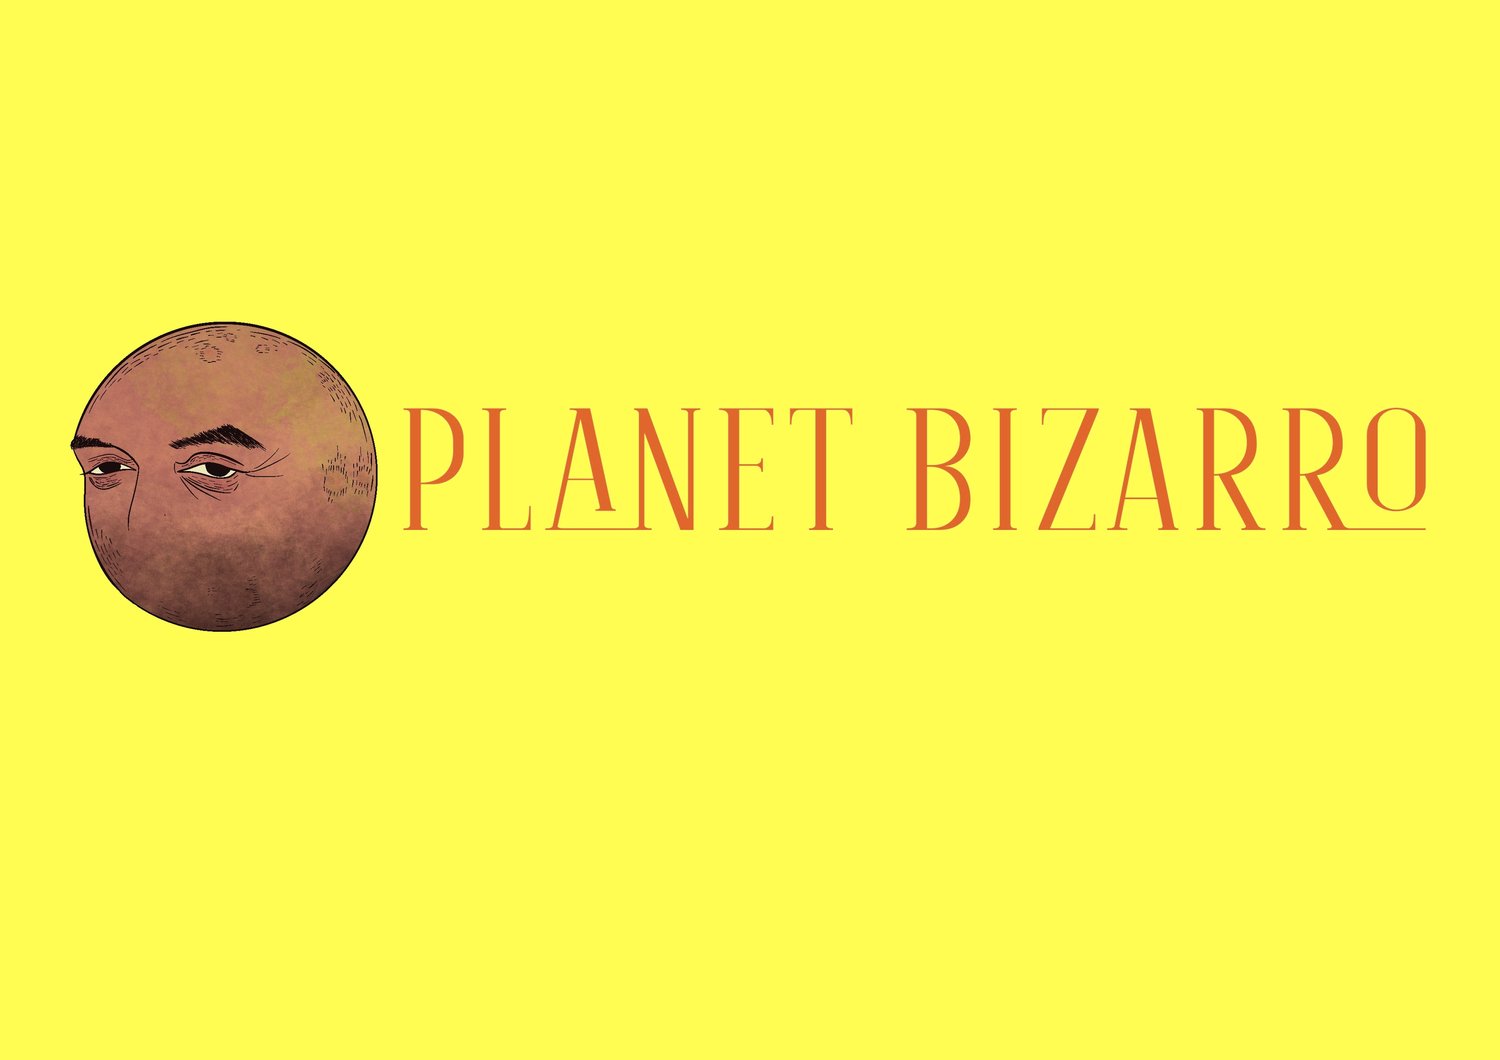 Planet Bizarro Press